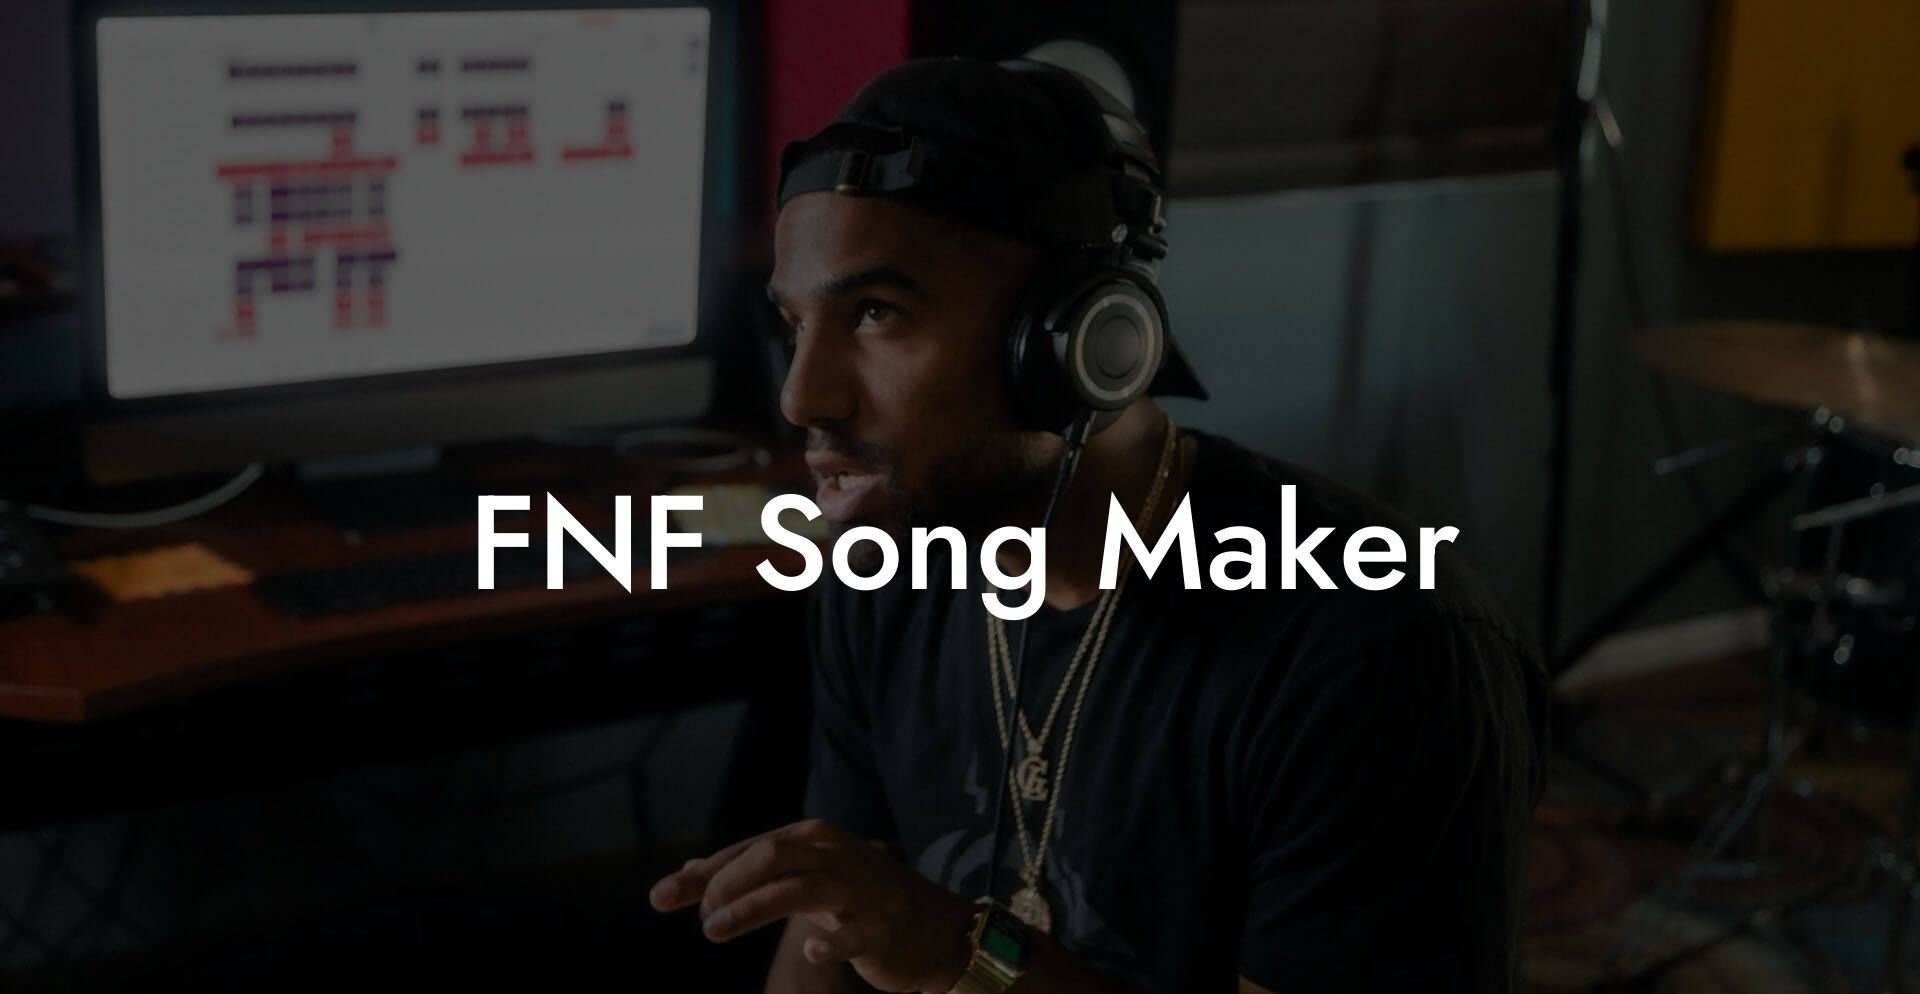 fnf song maker lyric assistant